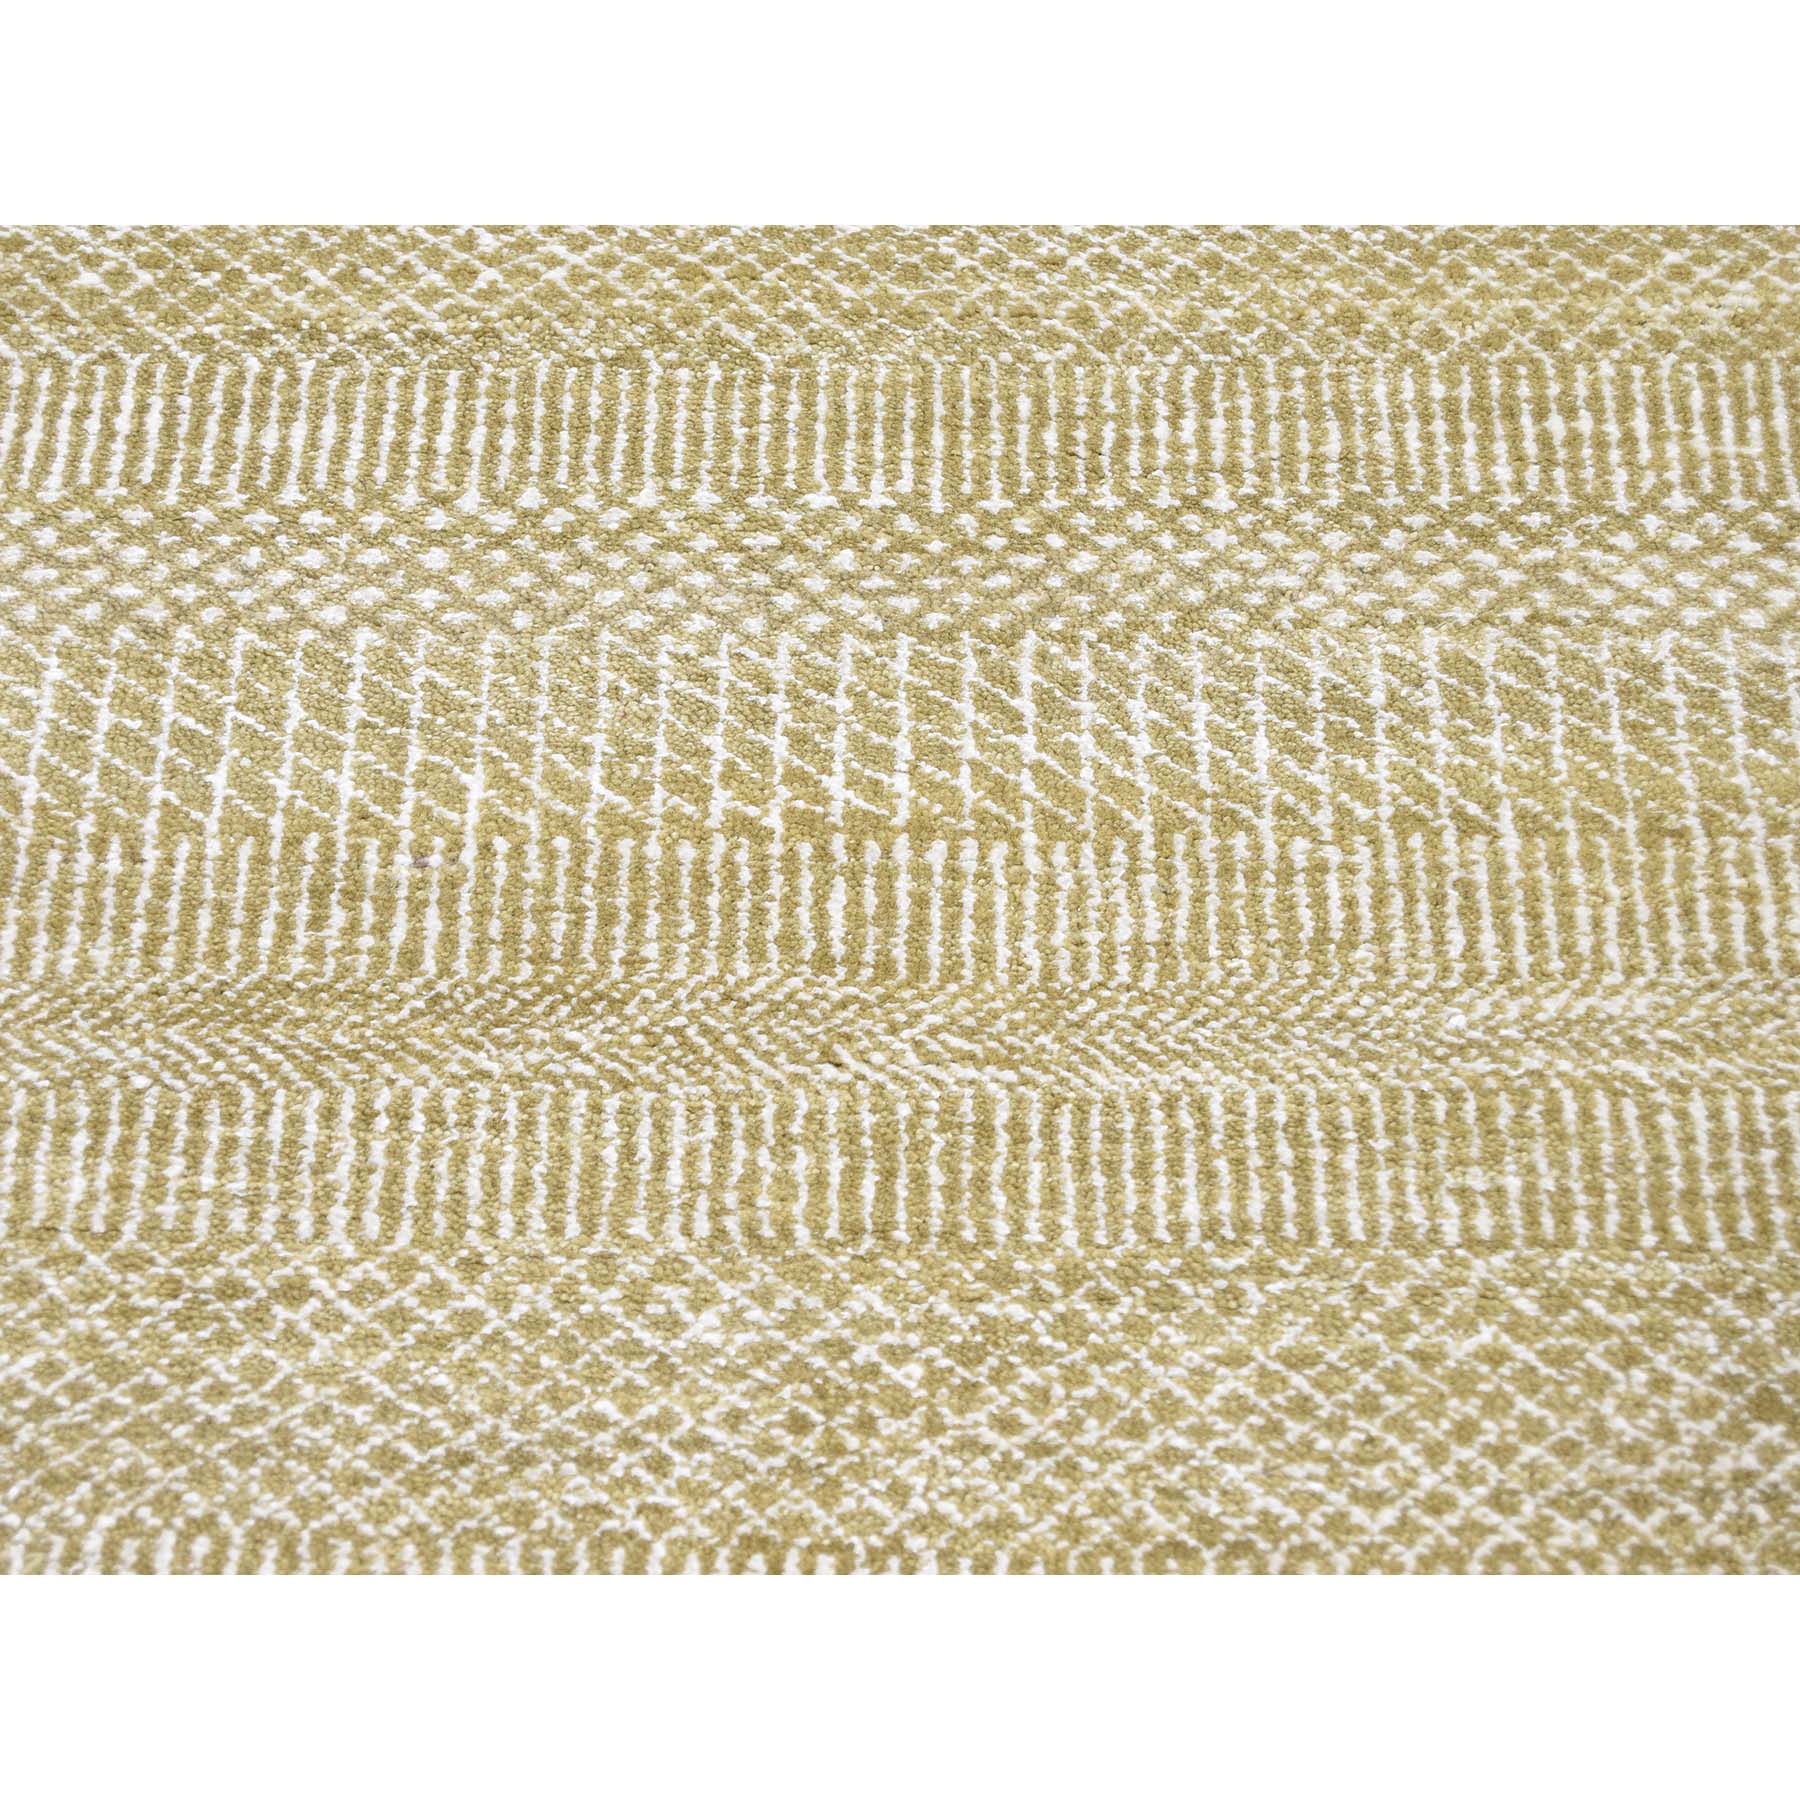 10'1"x14' Hand Woven Wool and Silk Grass Design Oriental Rug 